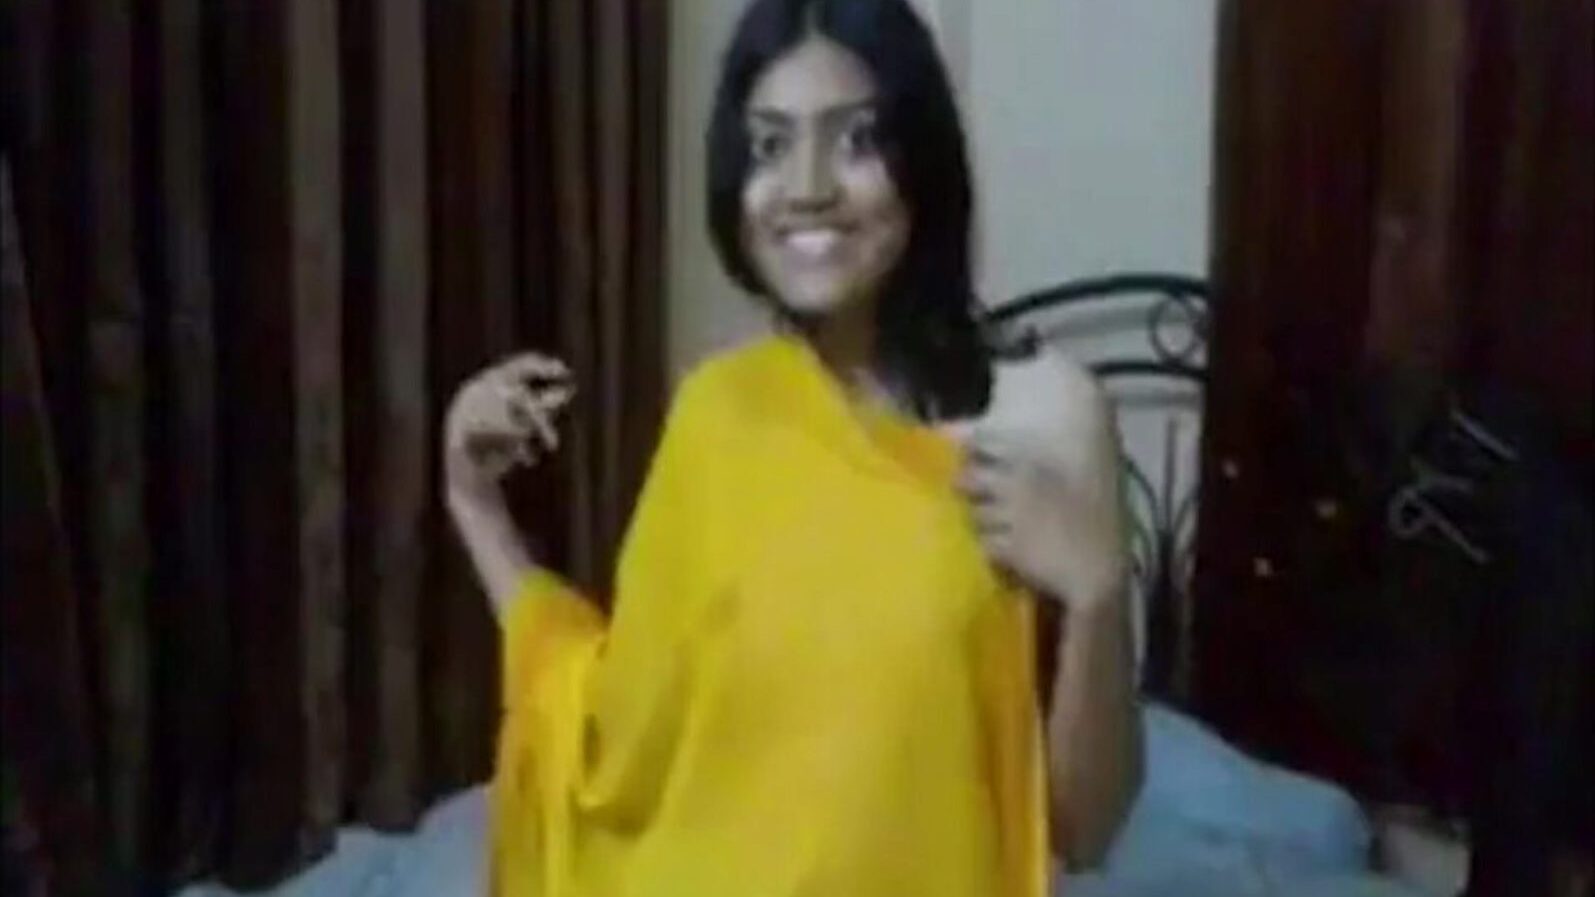 indická studentka kurva od nevlastního bratra, porno 0c: xhamster sledovat indická studentka kurva od nevlastního bratra epizoda na xhamsteru, obrovský web hd fuckfest tube s mnoha amatérskými asijskými kurvy online a kouření porno filmových scén